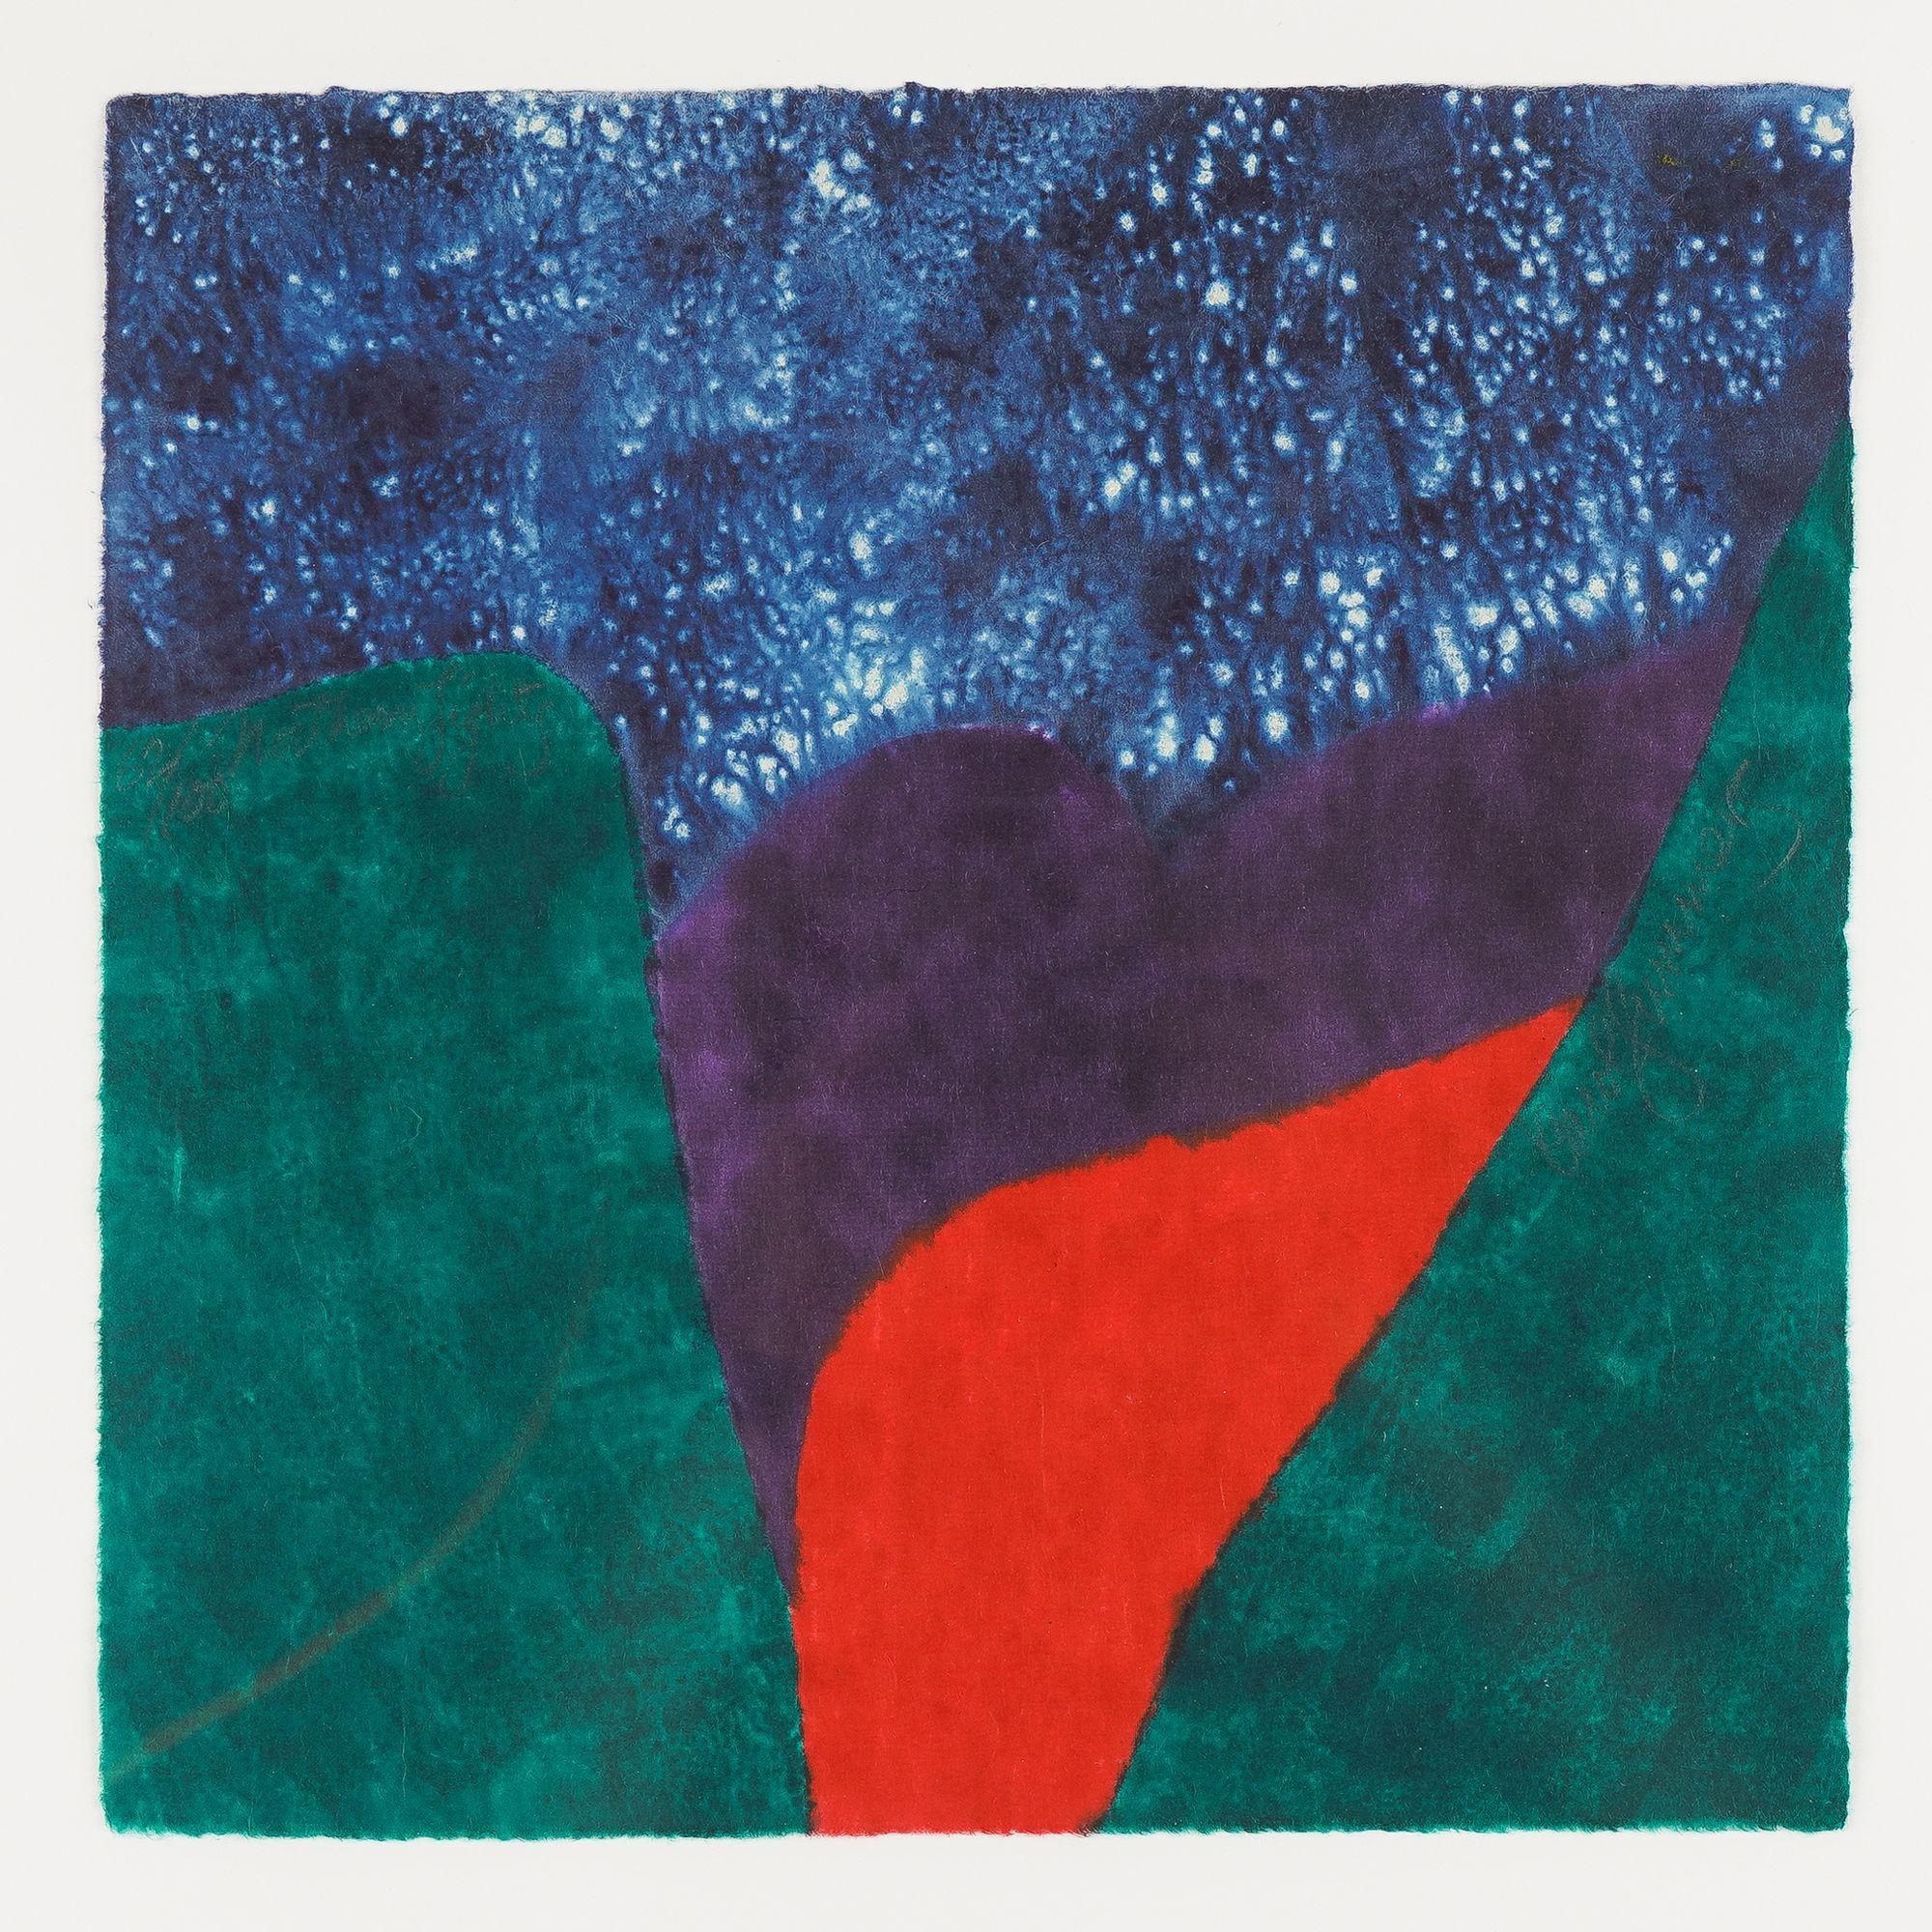 Gravure abstraite polychrome sur bois en bleu, vert, violet et rouge.

Signé, numéroté et daté à la mine de plomb dans l'œuvre : 62/100

Américain, 2002.